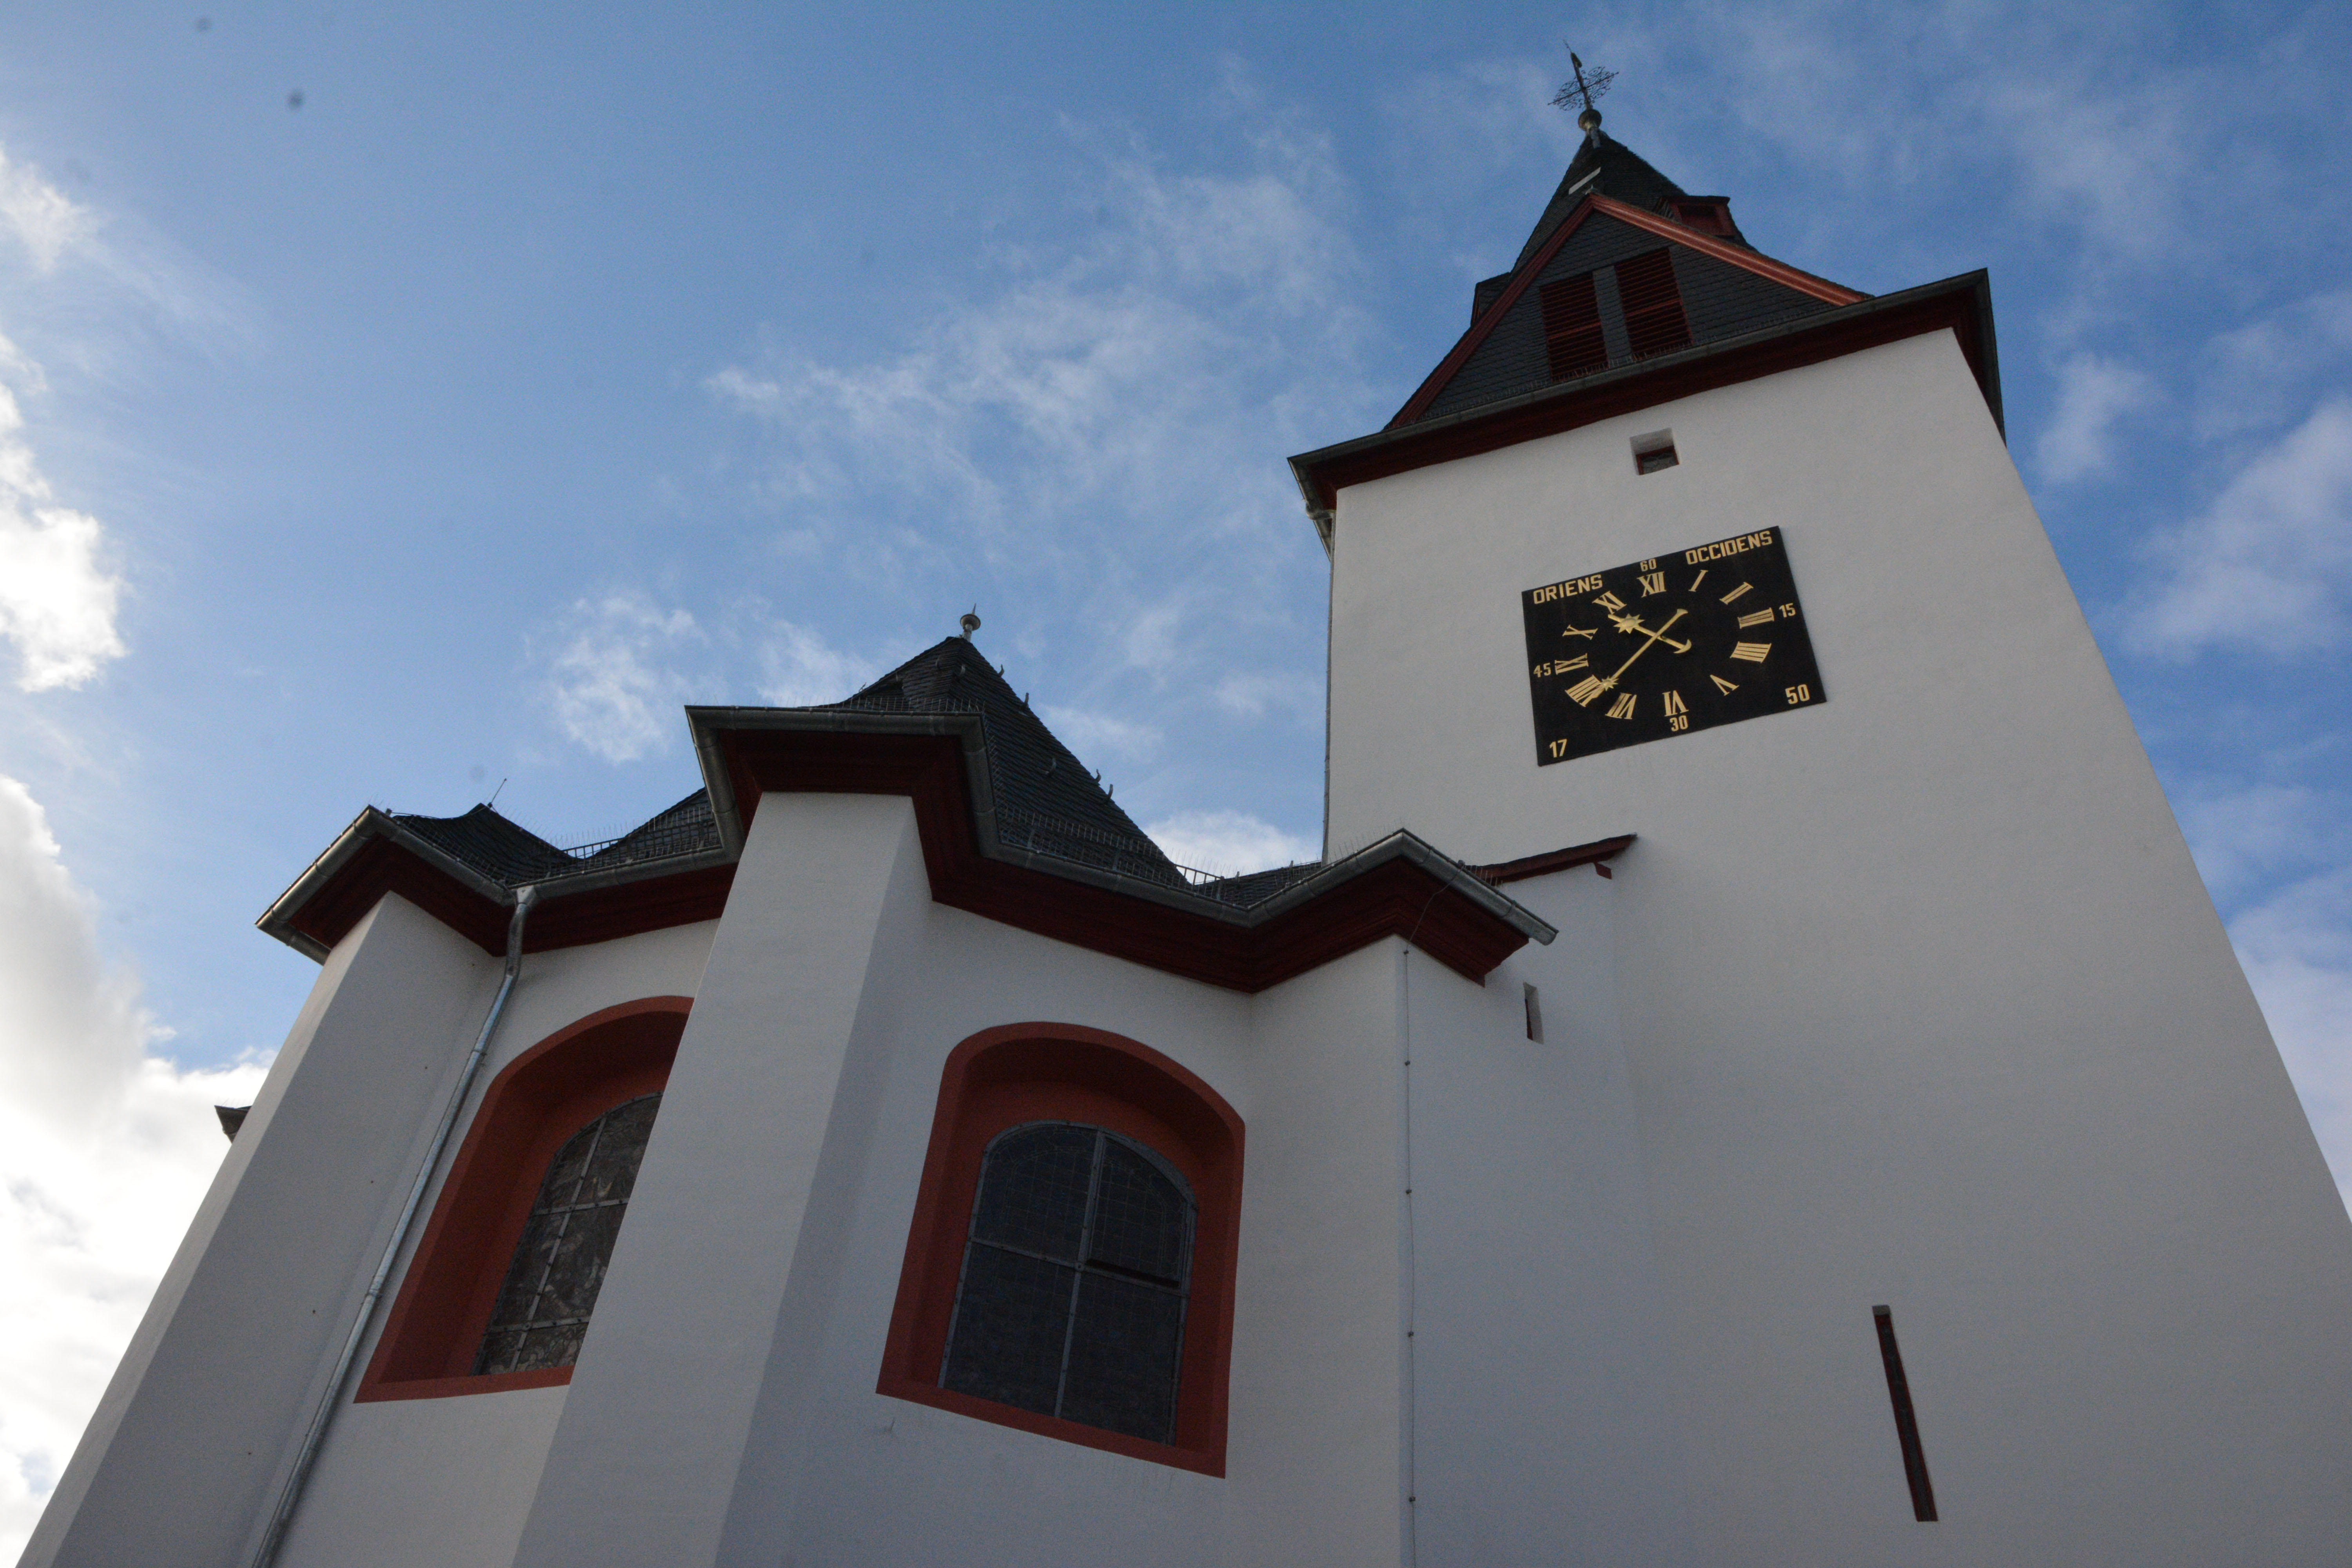 Bild 1 Unionskirche - Evangelische Kirchengemeinde Idstein in Idstein